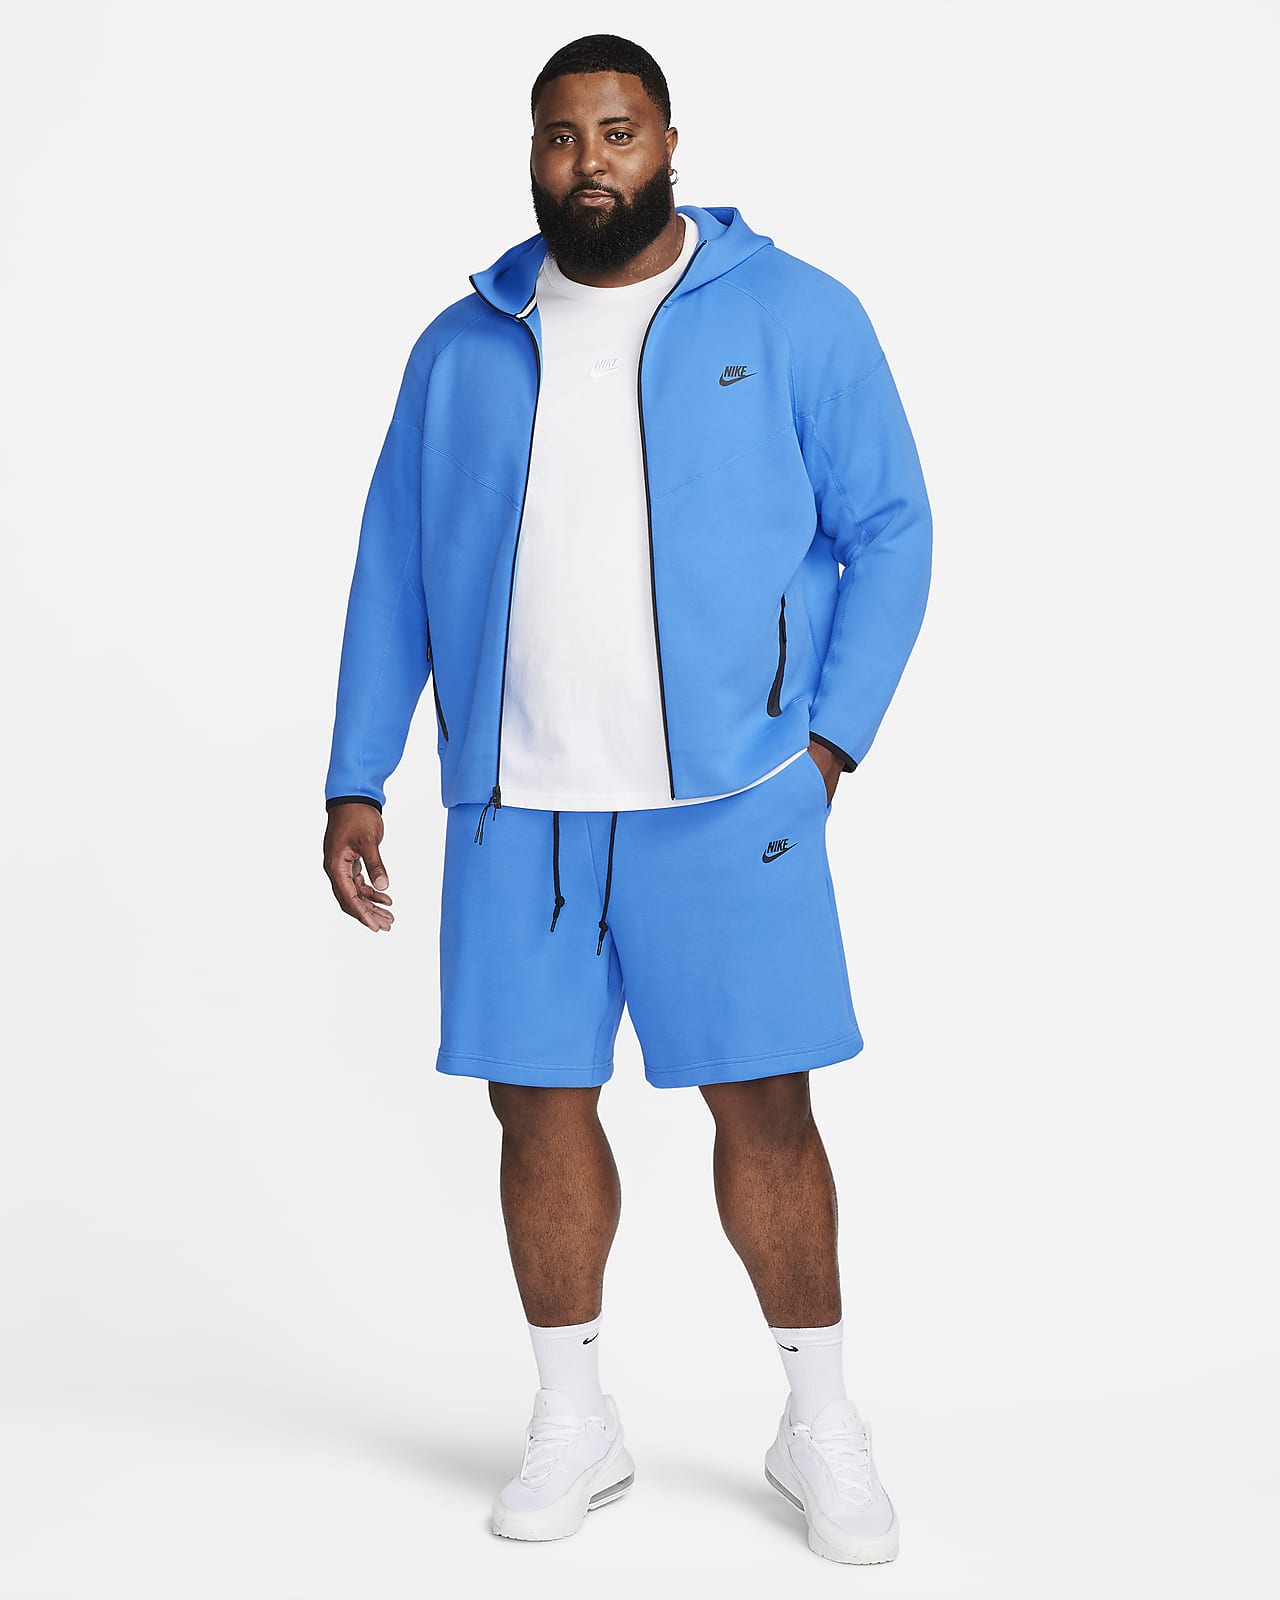 Nike Sportswear Tech Fleece Men's Shorts. Nike SI